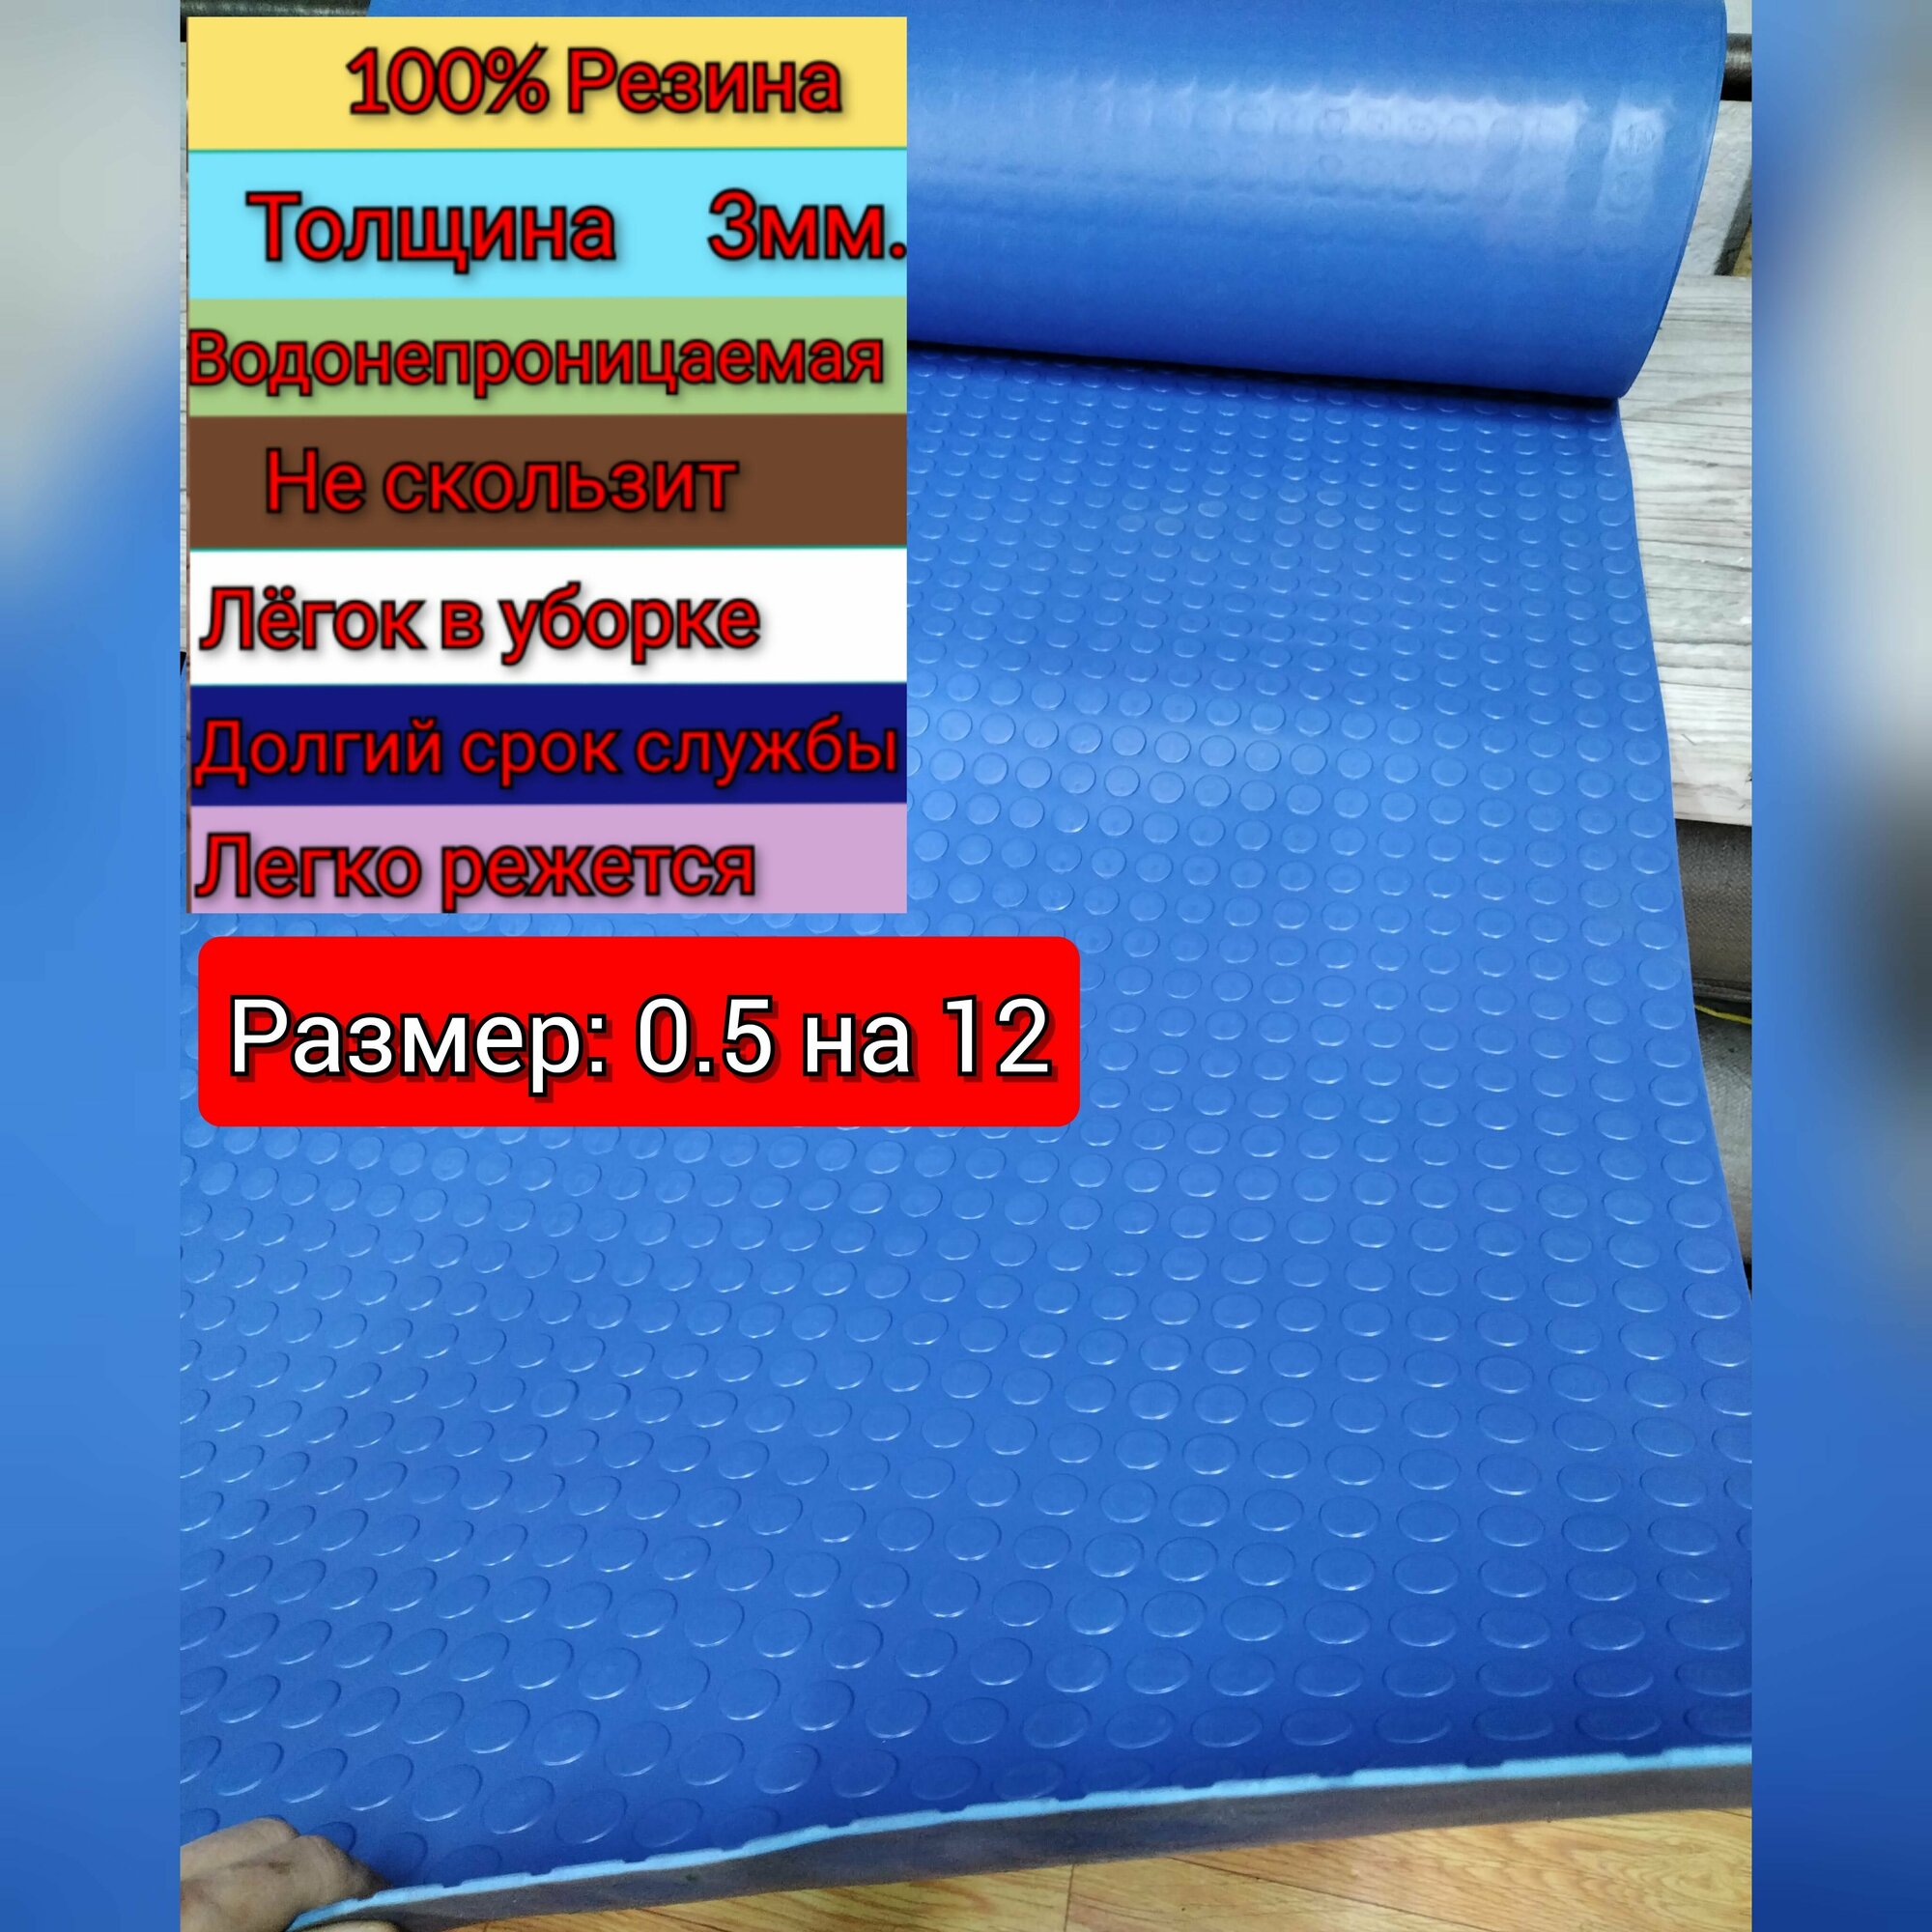 Резиновое покрытие напольное в рулоне 0.5 х 12 (Монета, цвет синий) Резиновая дорожка для авто, гаража, ступень, для лифта